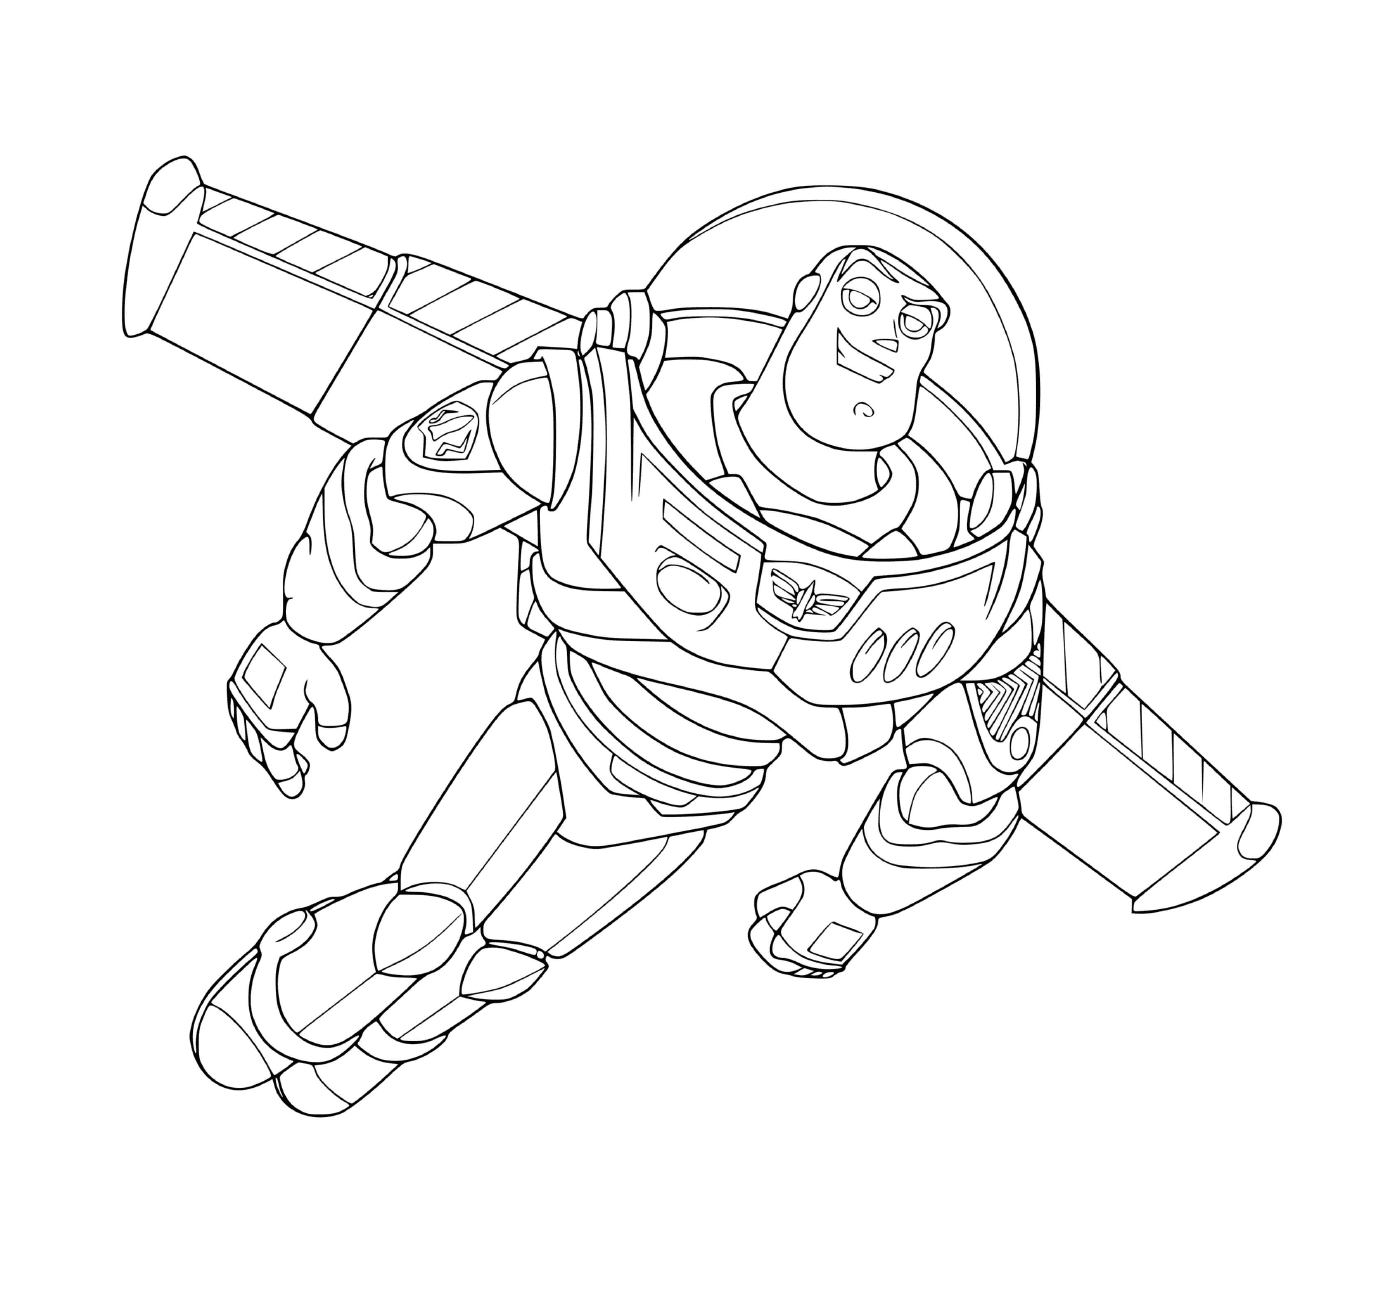  Buzz Lightyear, inspiriert von Astronaut Buzz Aldrin 